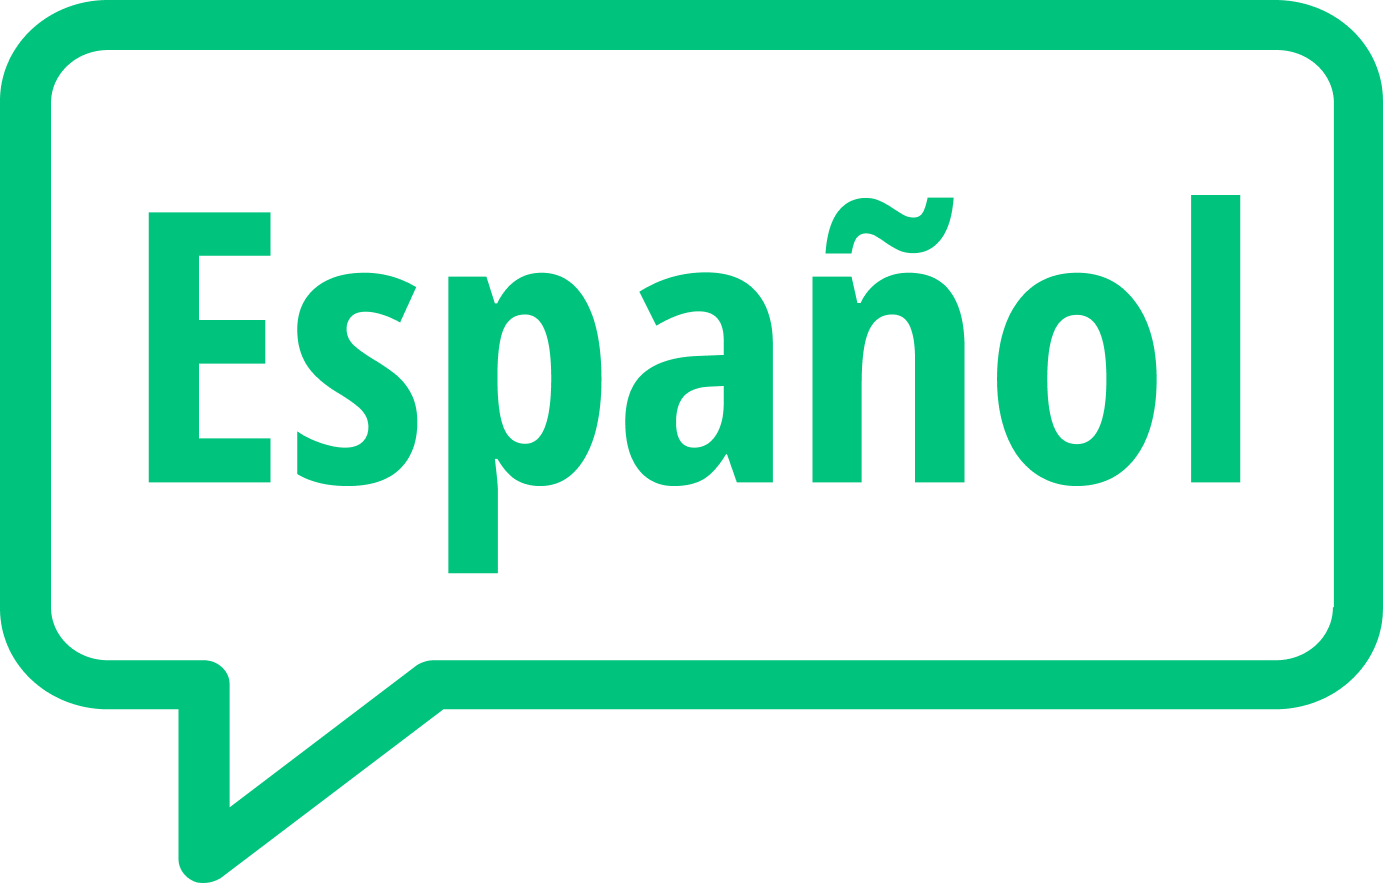 spanish speech bubble